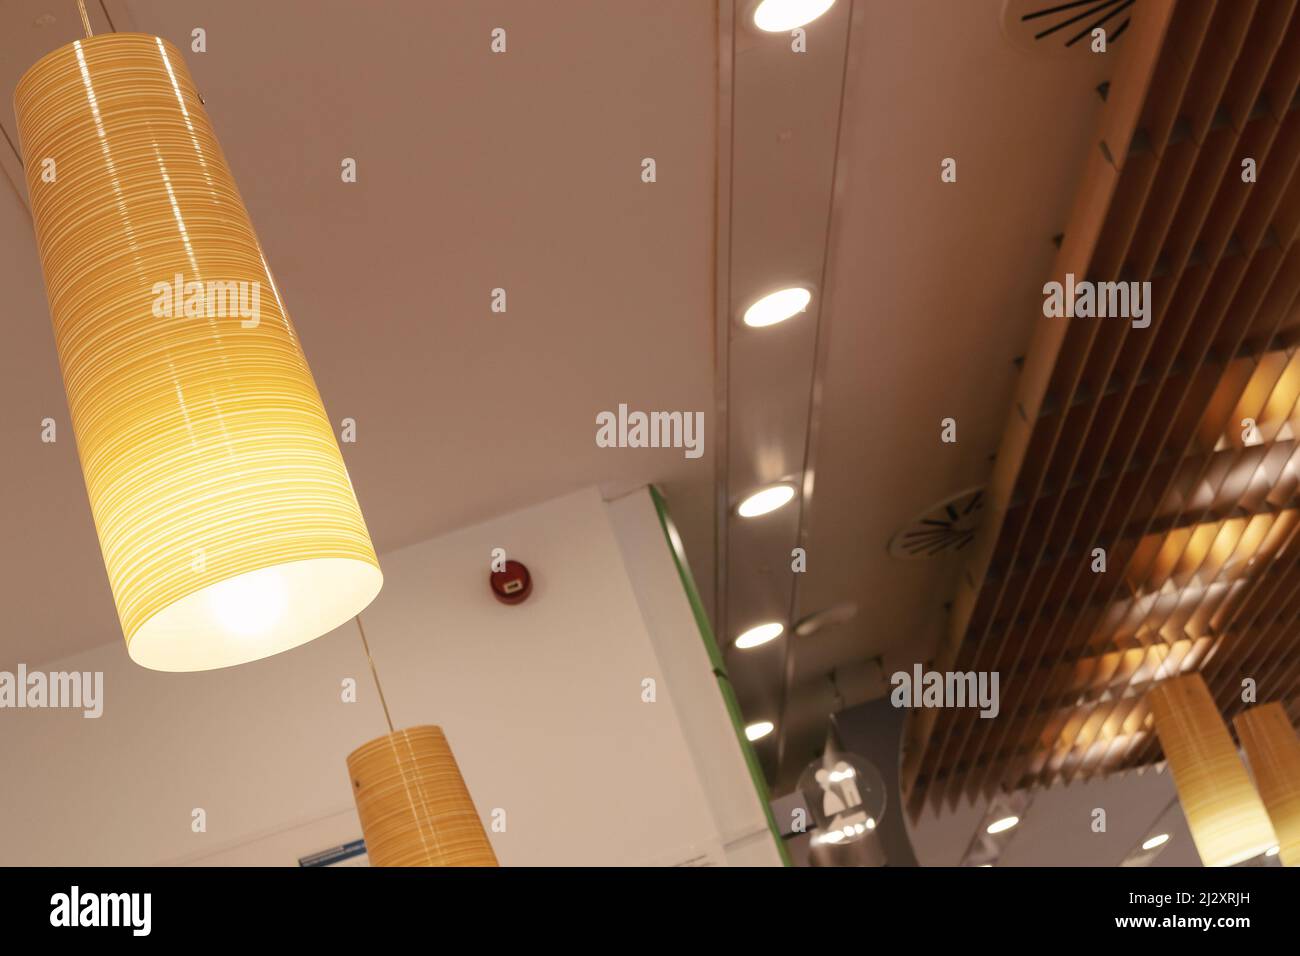 Moderna illuminazione a soffitto, dettagli di lampade e costruzioni in legno. Foto Stock